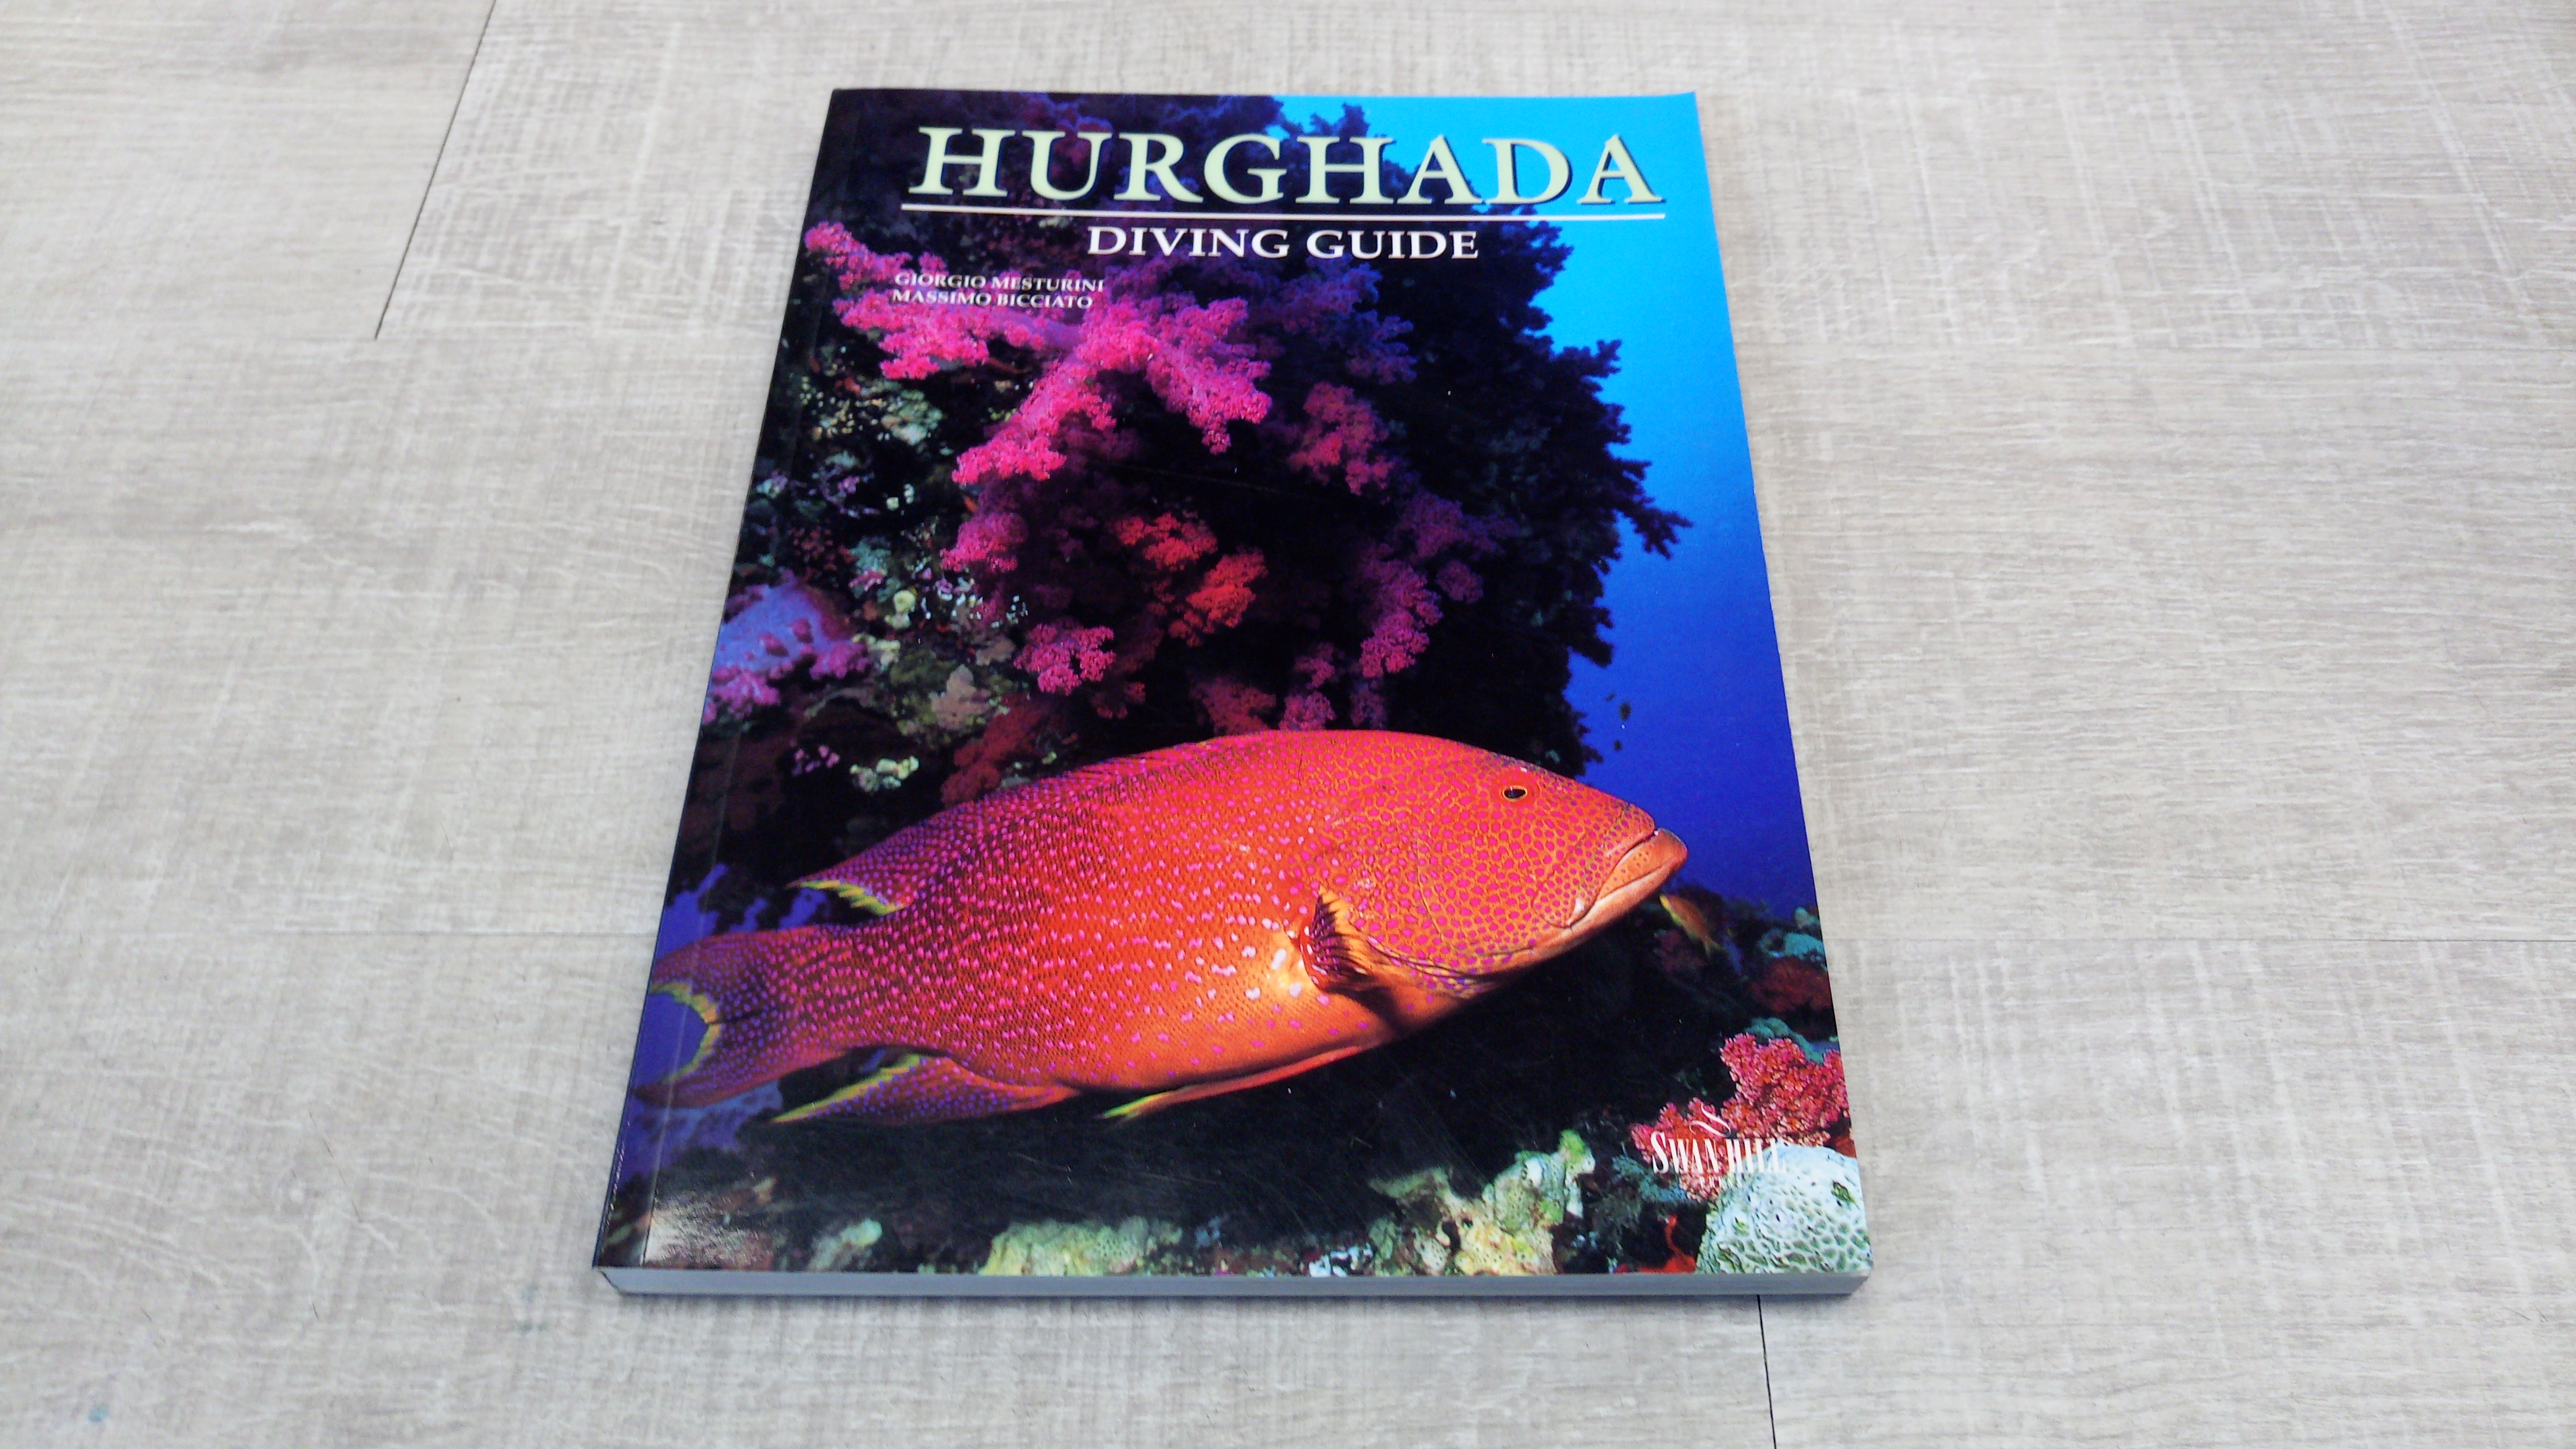 Hurghada Diving Guide